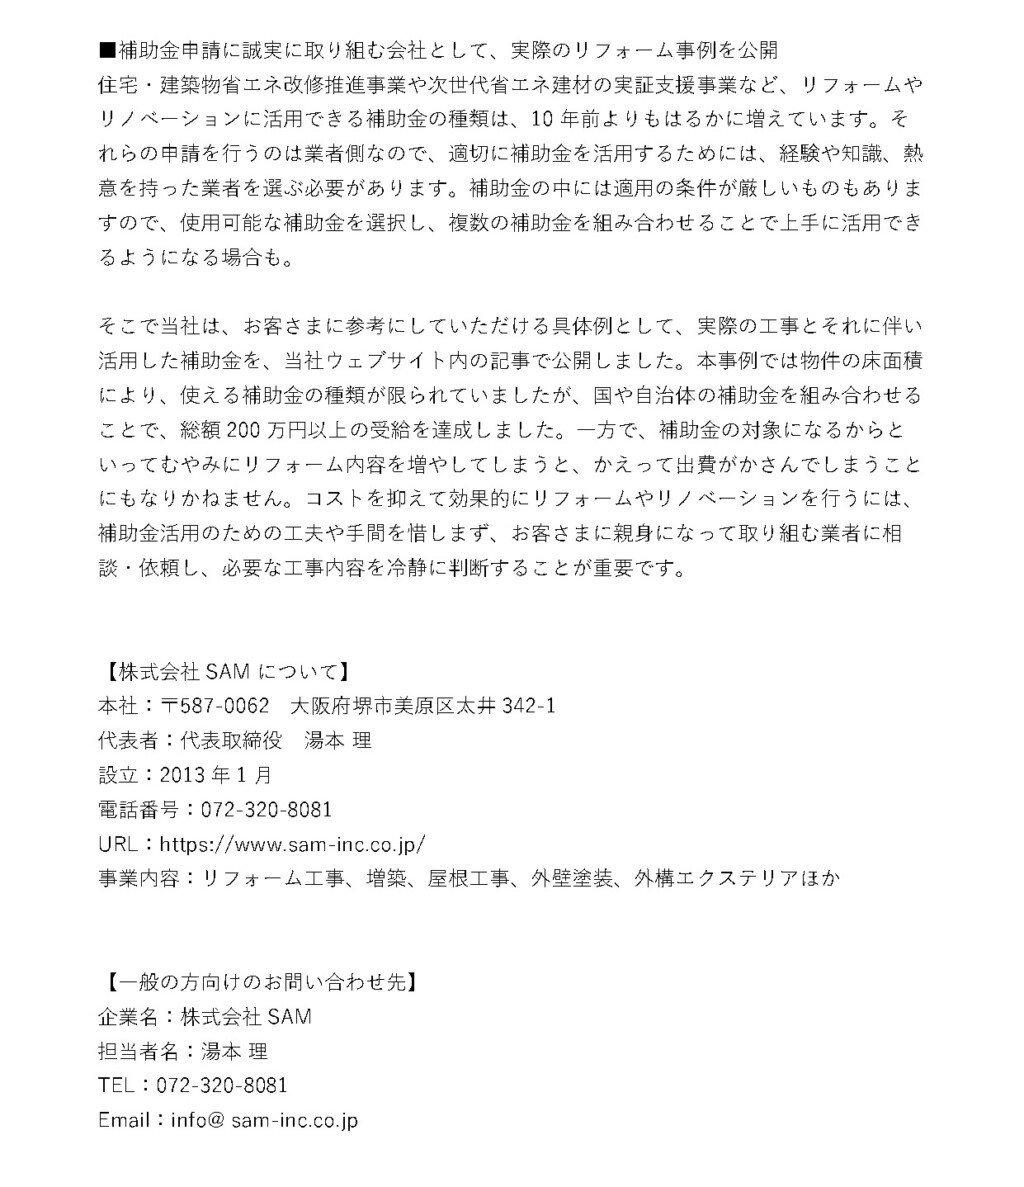 大阪府堺市美原区のリフォーム工事会社が、住宅リノベーションの補助金の需給に関する事例の記事を、自社ウェブサイト内で10月17日に公開